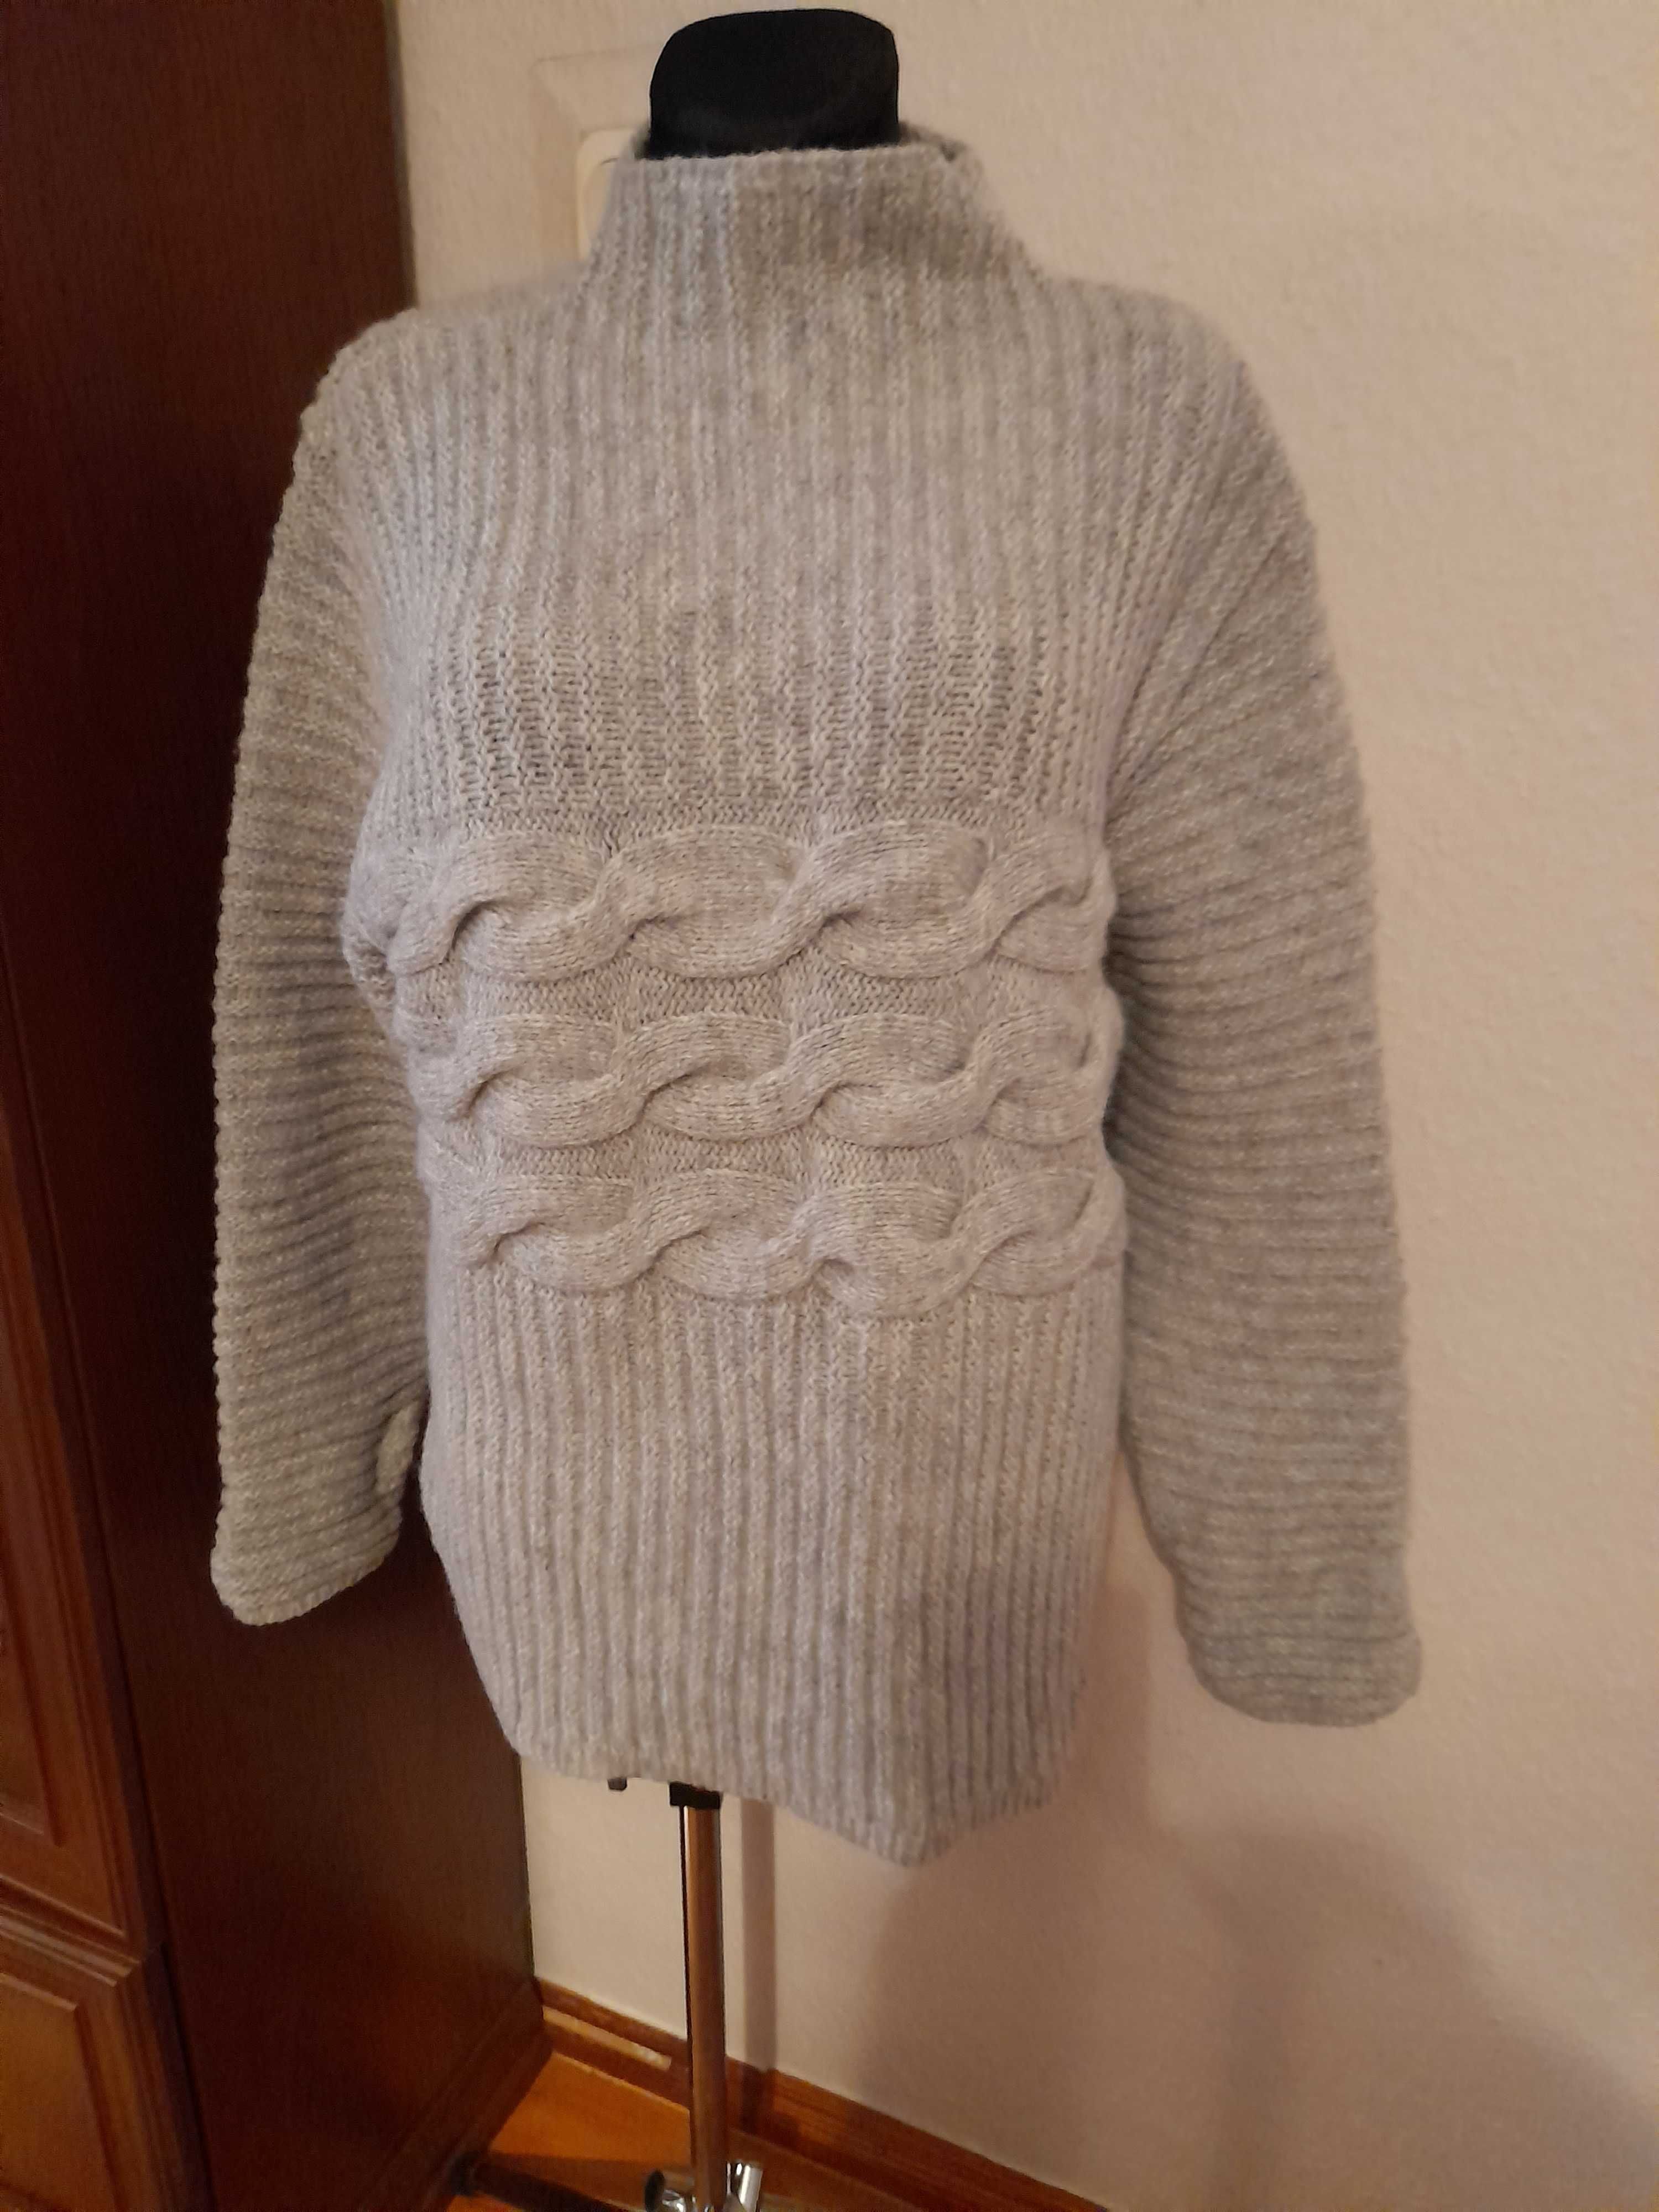 Nya av Nygards Anna Bengtsson wełniany sweter